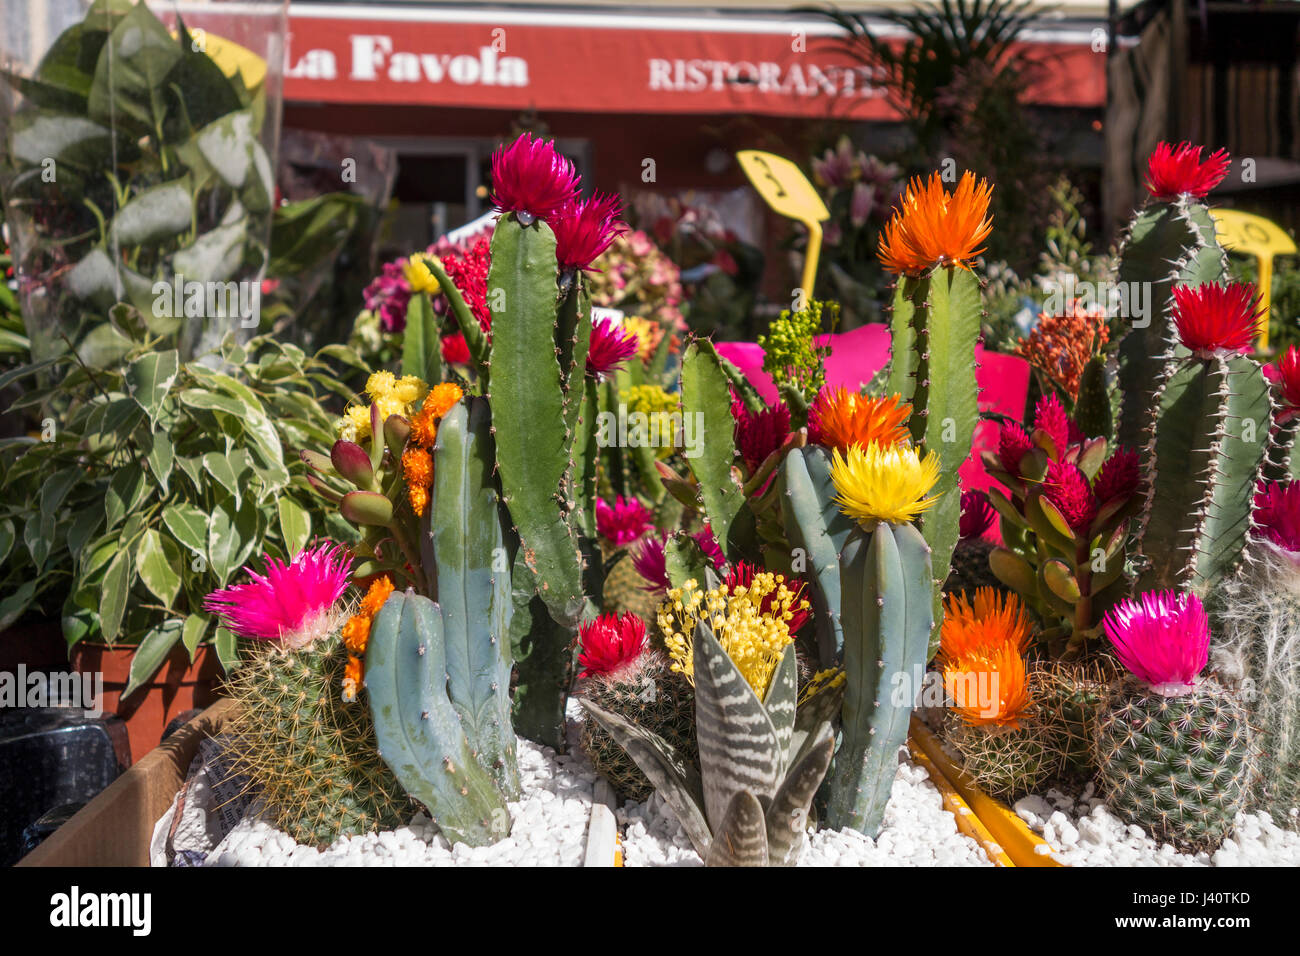 El mercado de las flores, el Cours Saleya, Nice, Alpes Maritimes, Provenza, Riviera francesa, mediterránea, Francia, Europa Foto de stock